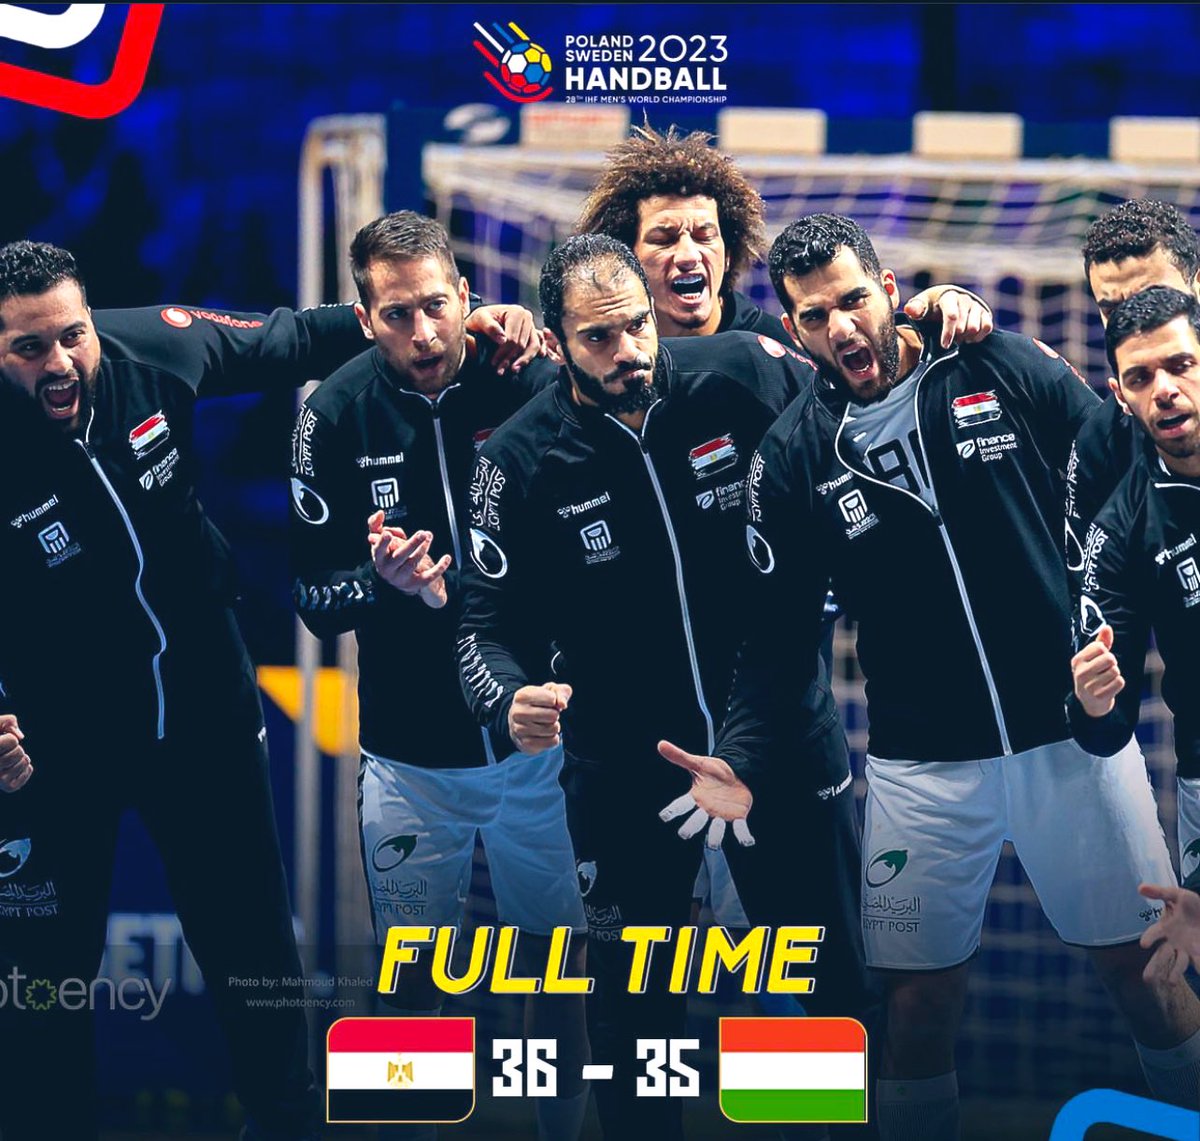 مصر 🇪🇬 7 العالم 

🇭🇺 8 العالم 

الف مبروك الفراعنه 

#handball2023 #POLSWE2023